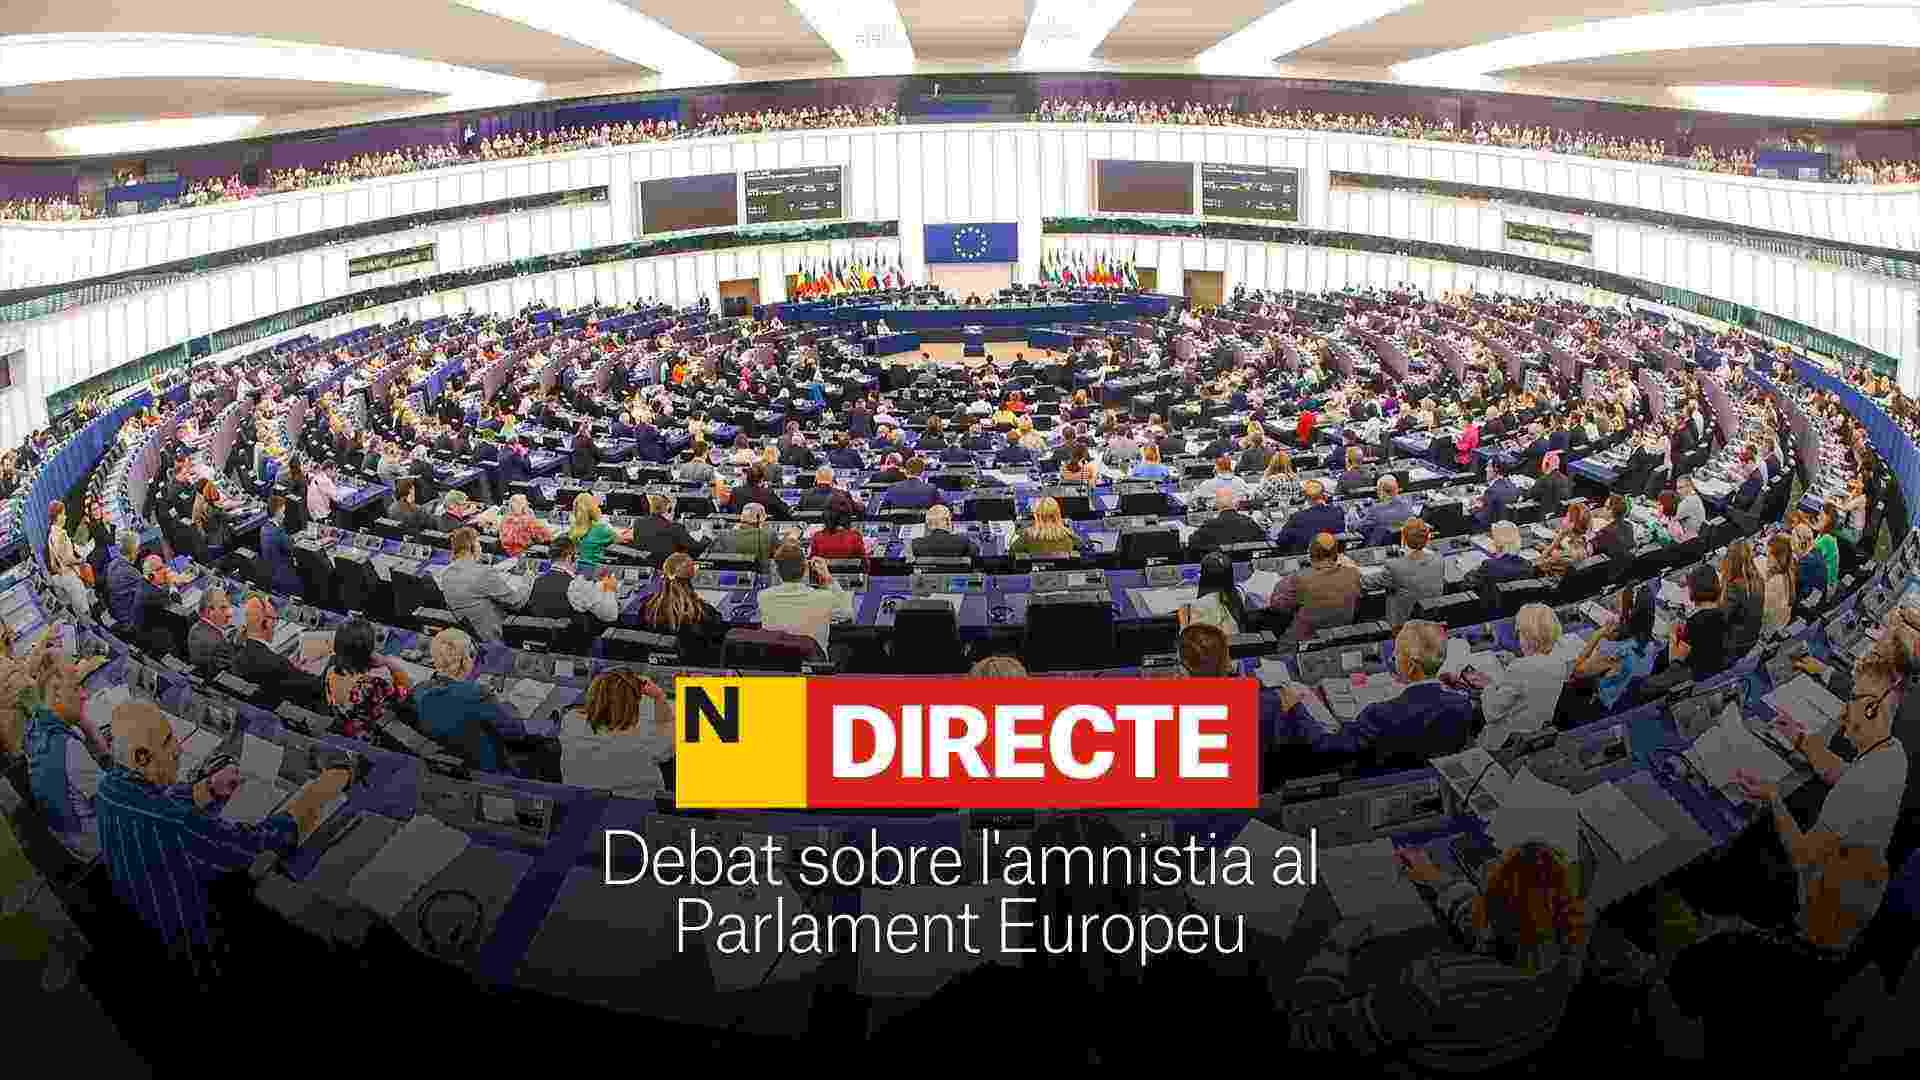 Debate sobre la amnistía en el Parlamento Europeo, DIRECTO | La cámara aborda la "amenaza" para el estado de derecho